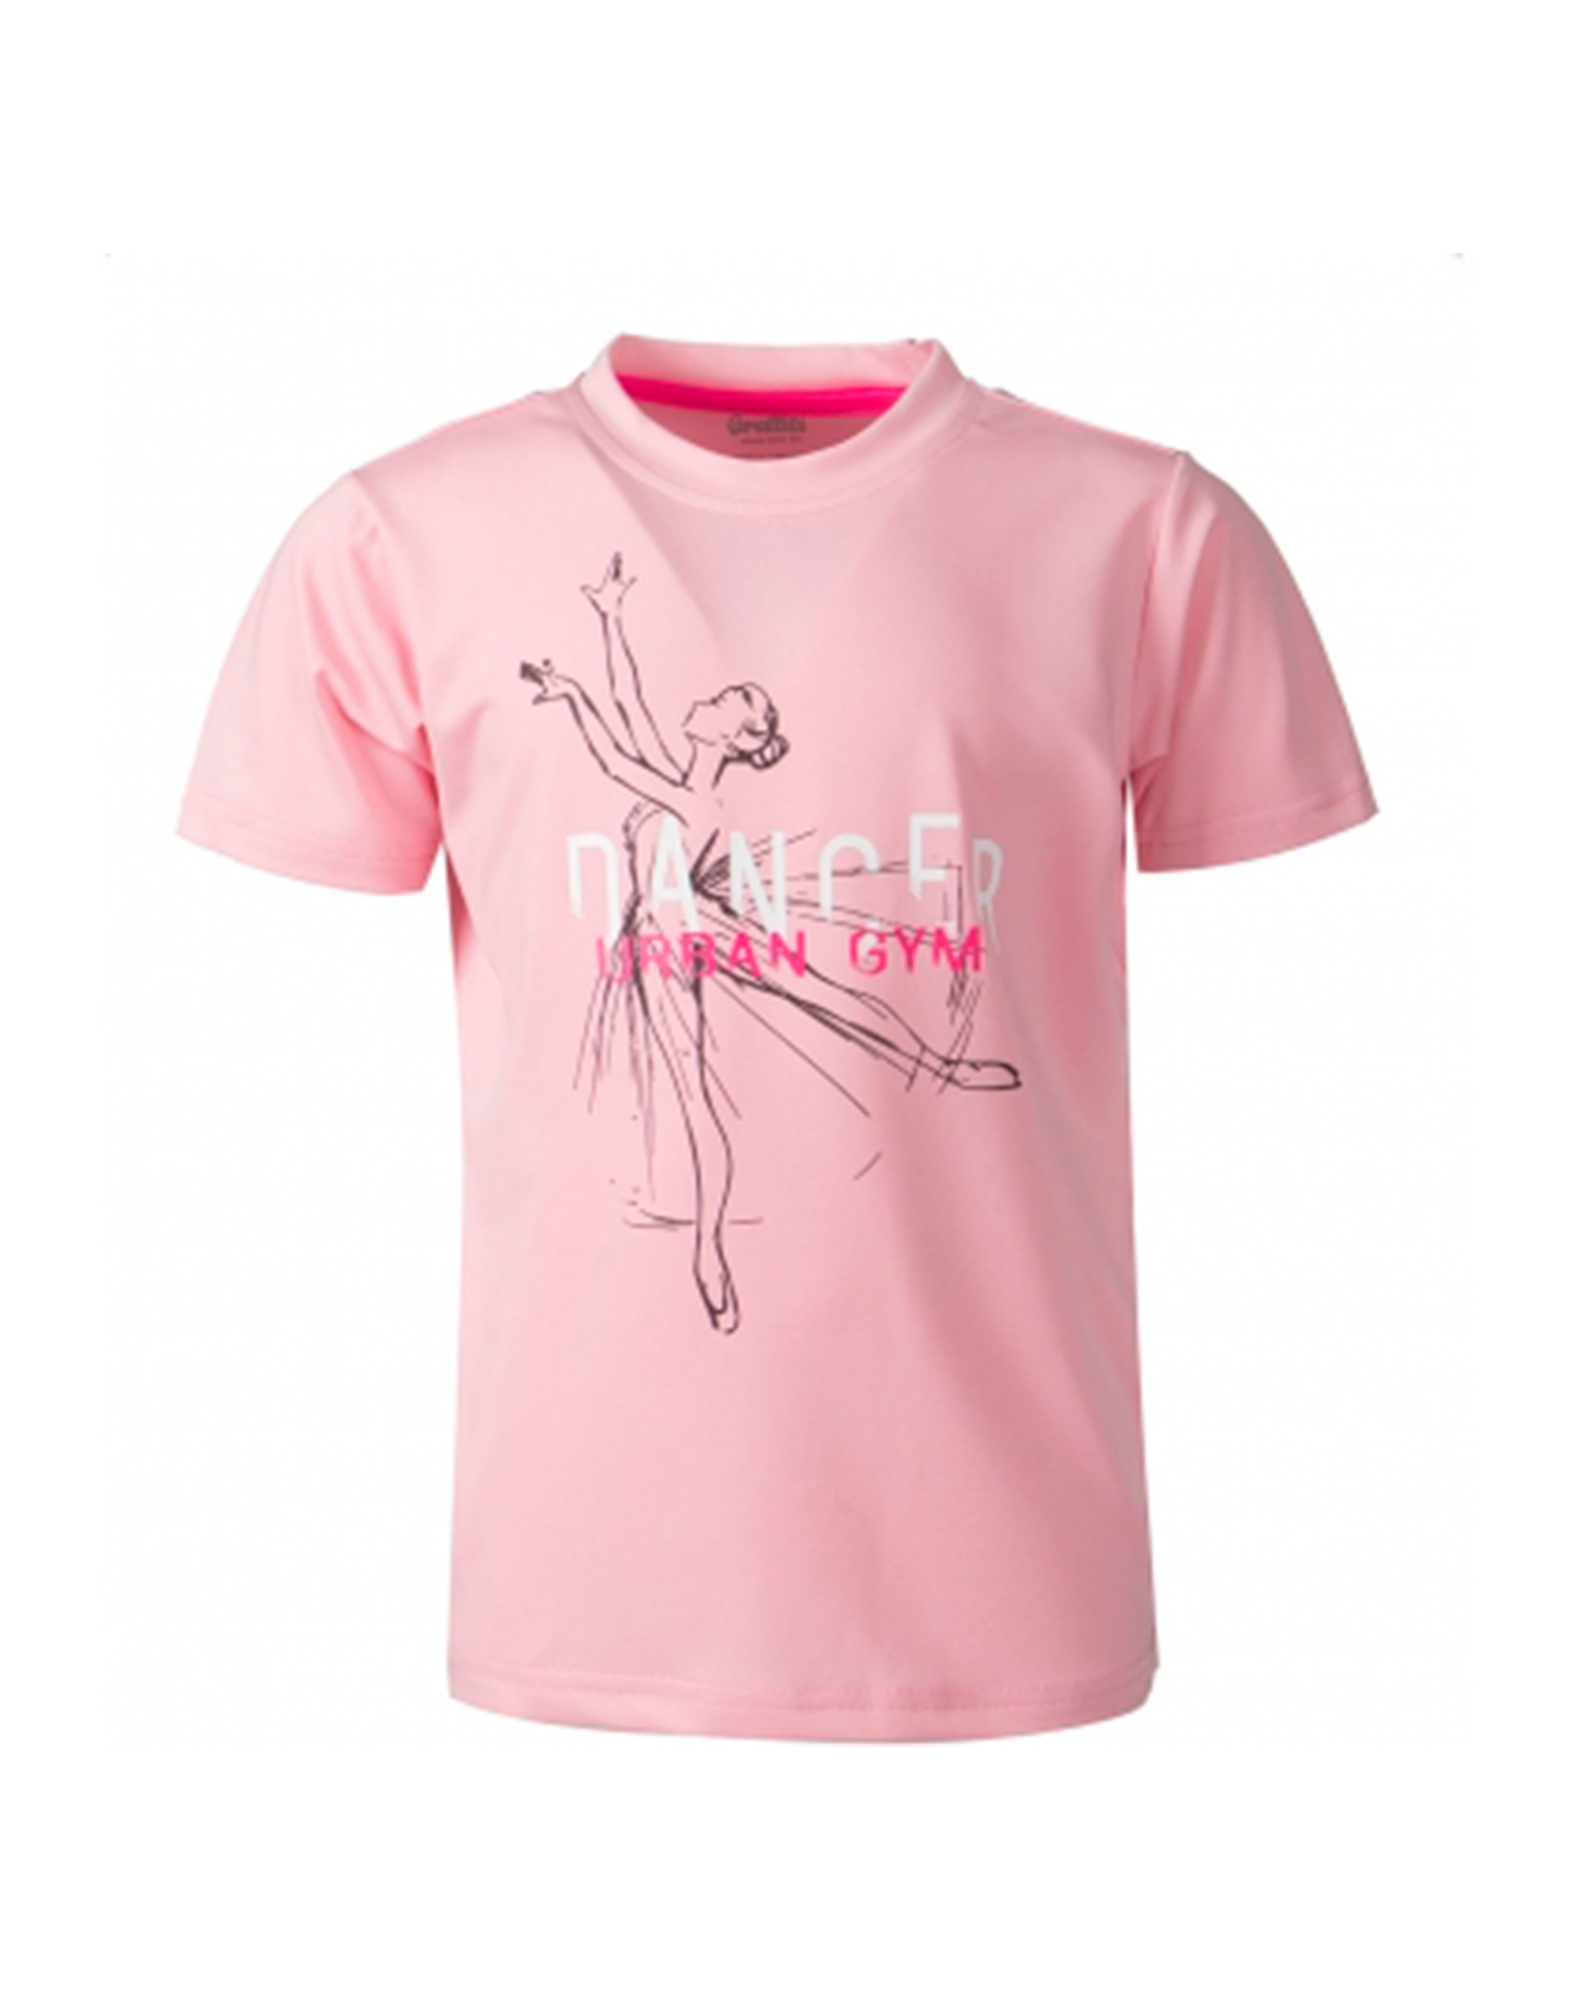 selvmord Addition virksomhed Køb Graffiti Linga t-shirt til børn i pink